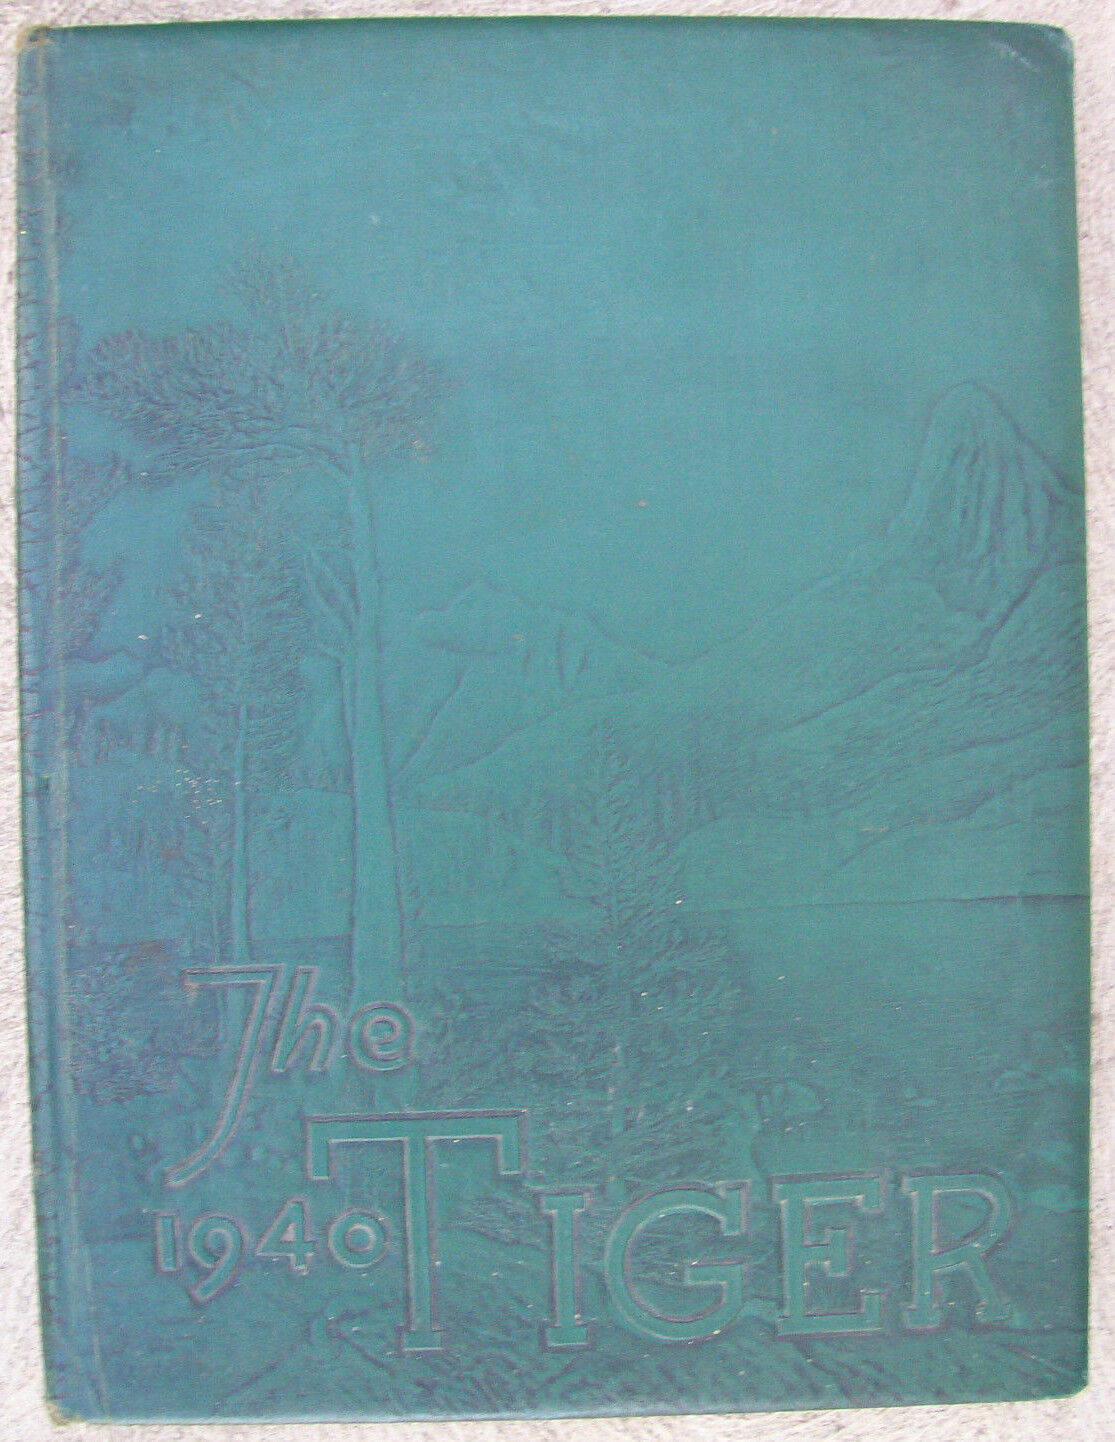 Vintage Yearbook 1940s Original Hardcover World War II Era Reedley College CA